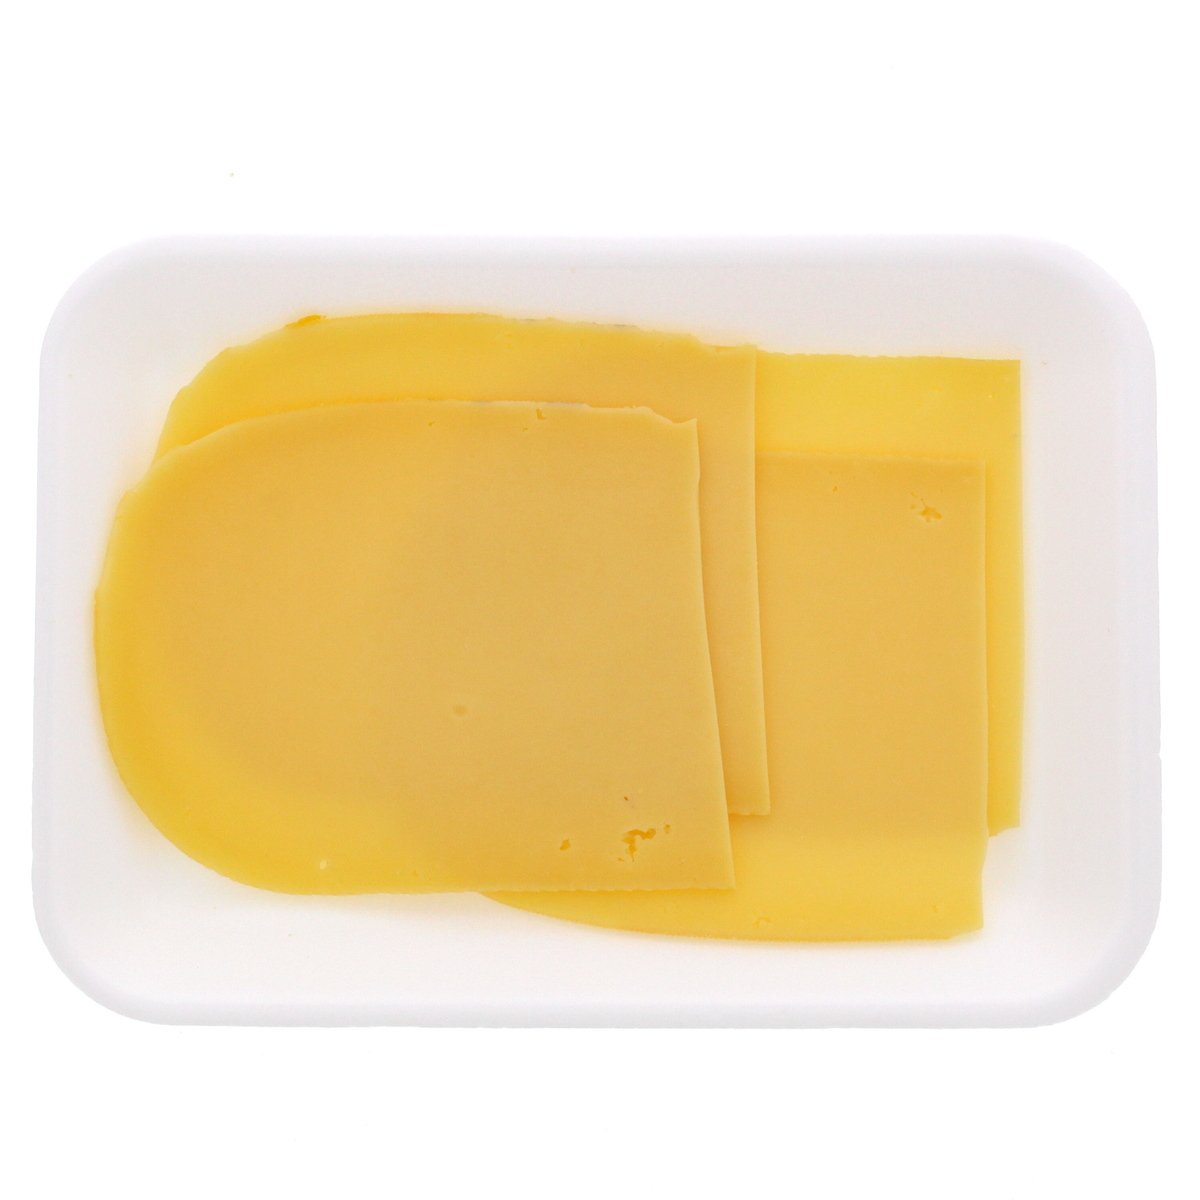 اشتري قم بشراء جبنة جودة هولندية خفيفة 250 جرام تقريبا Online at Best Price من الموقع - من لولو هايبر ماركت Dutch Cheese في السعودية